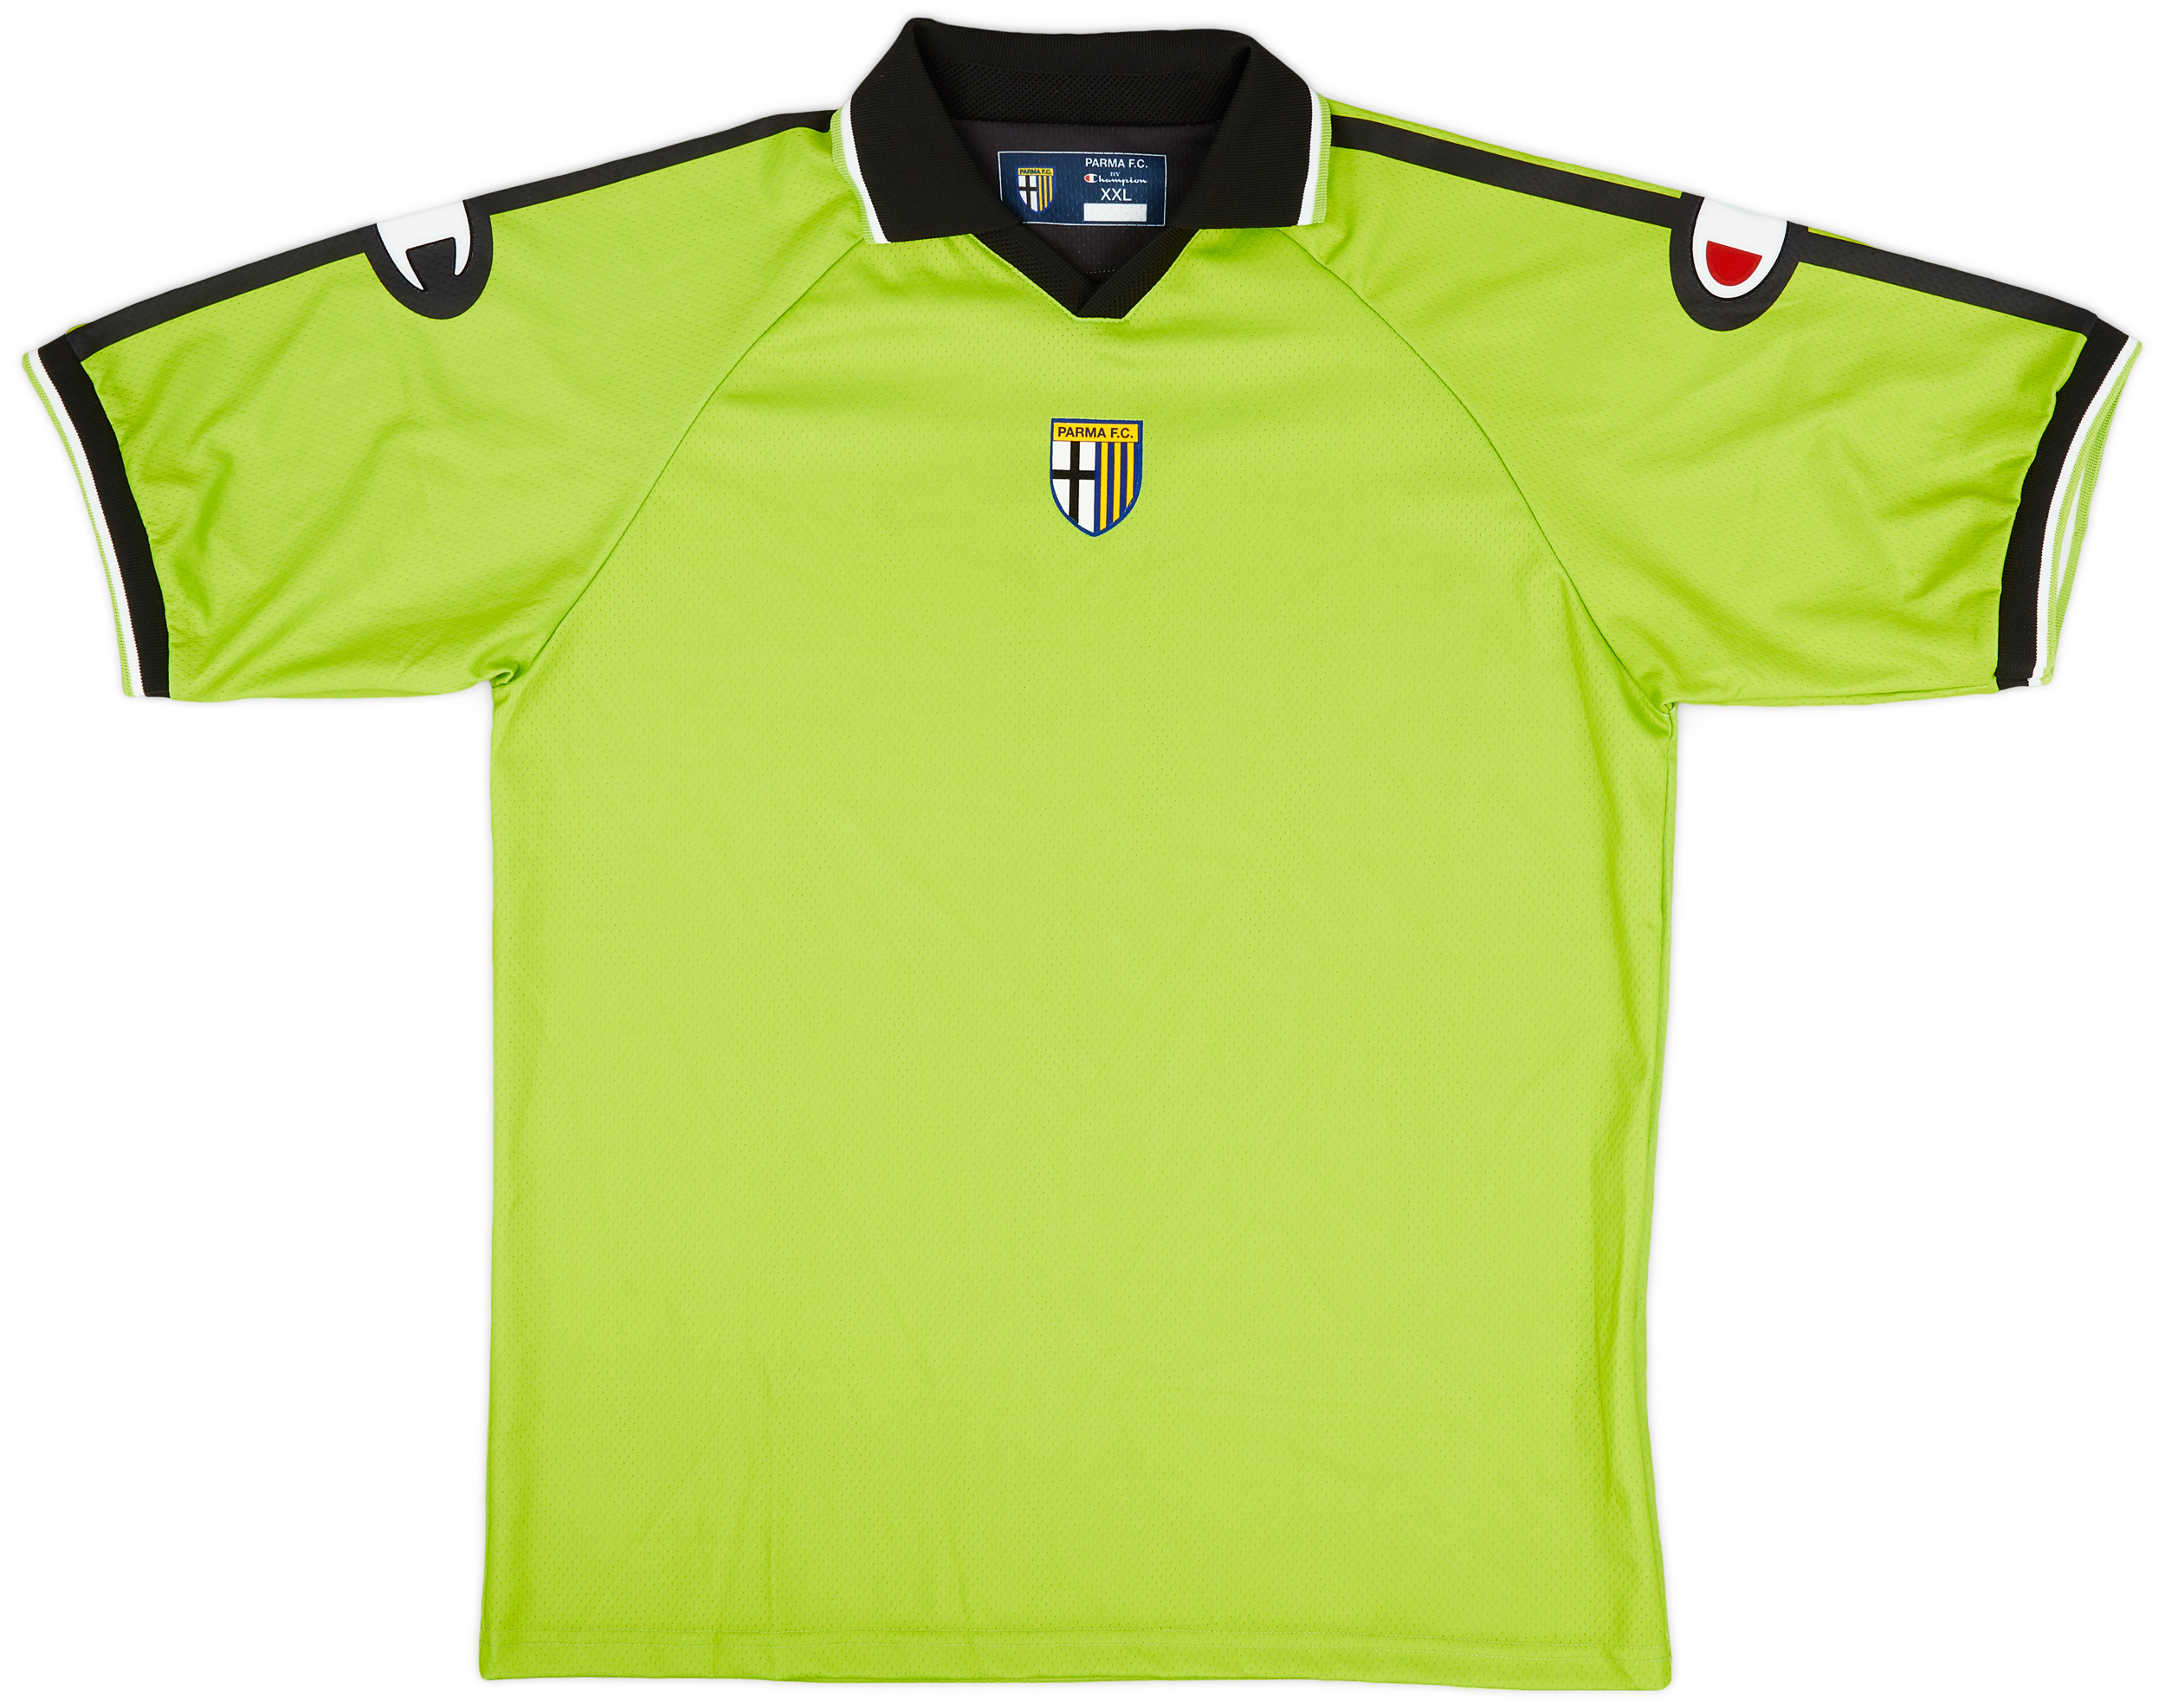 2004-05 Parma GK Shirt - 9/10 - ()